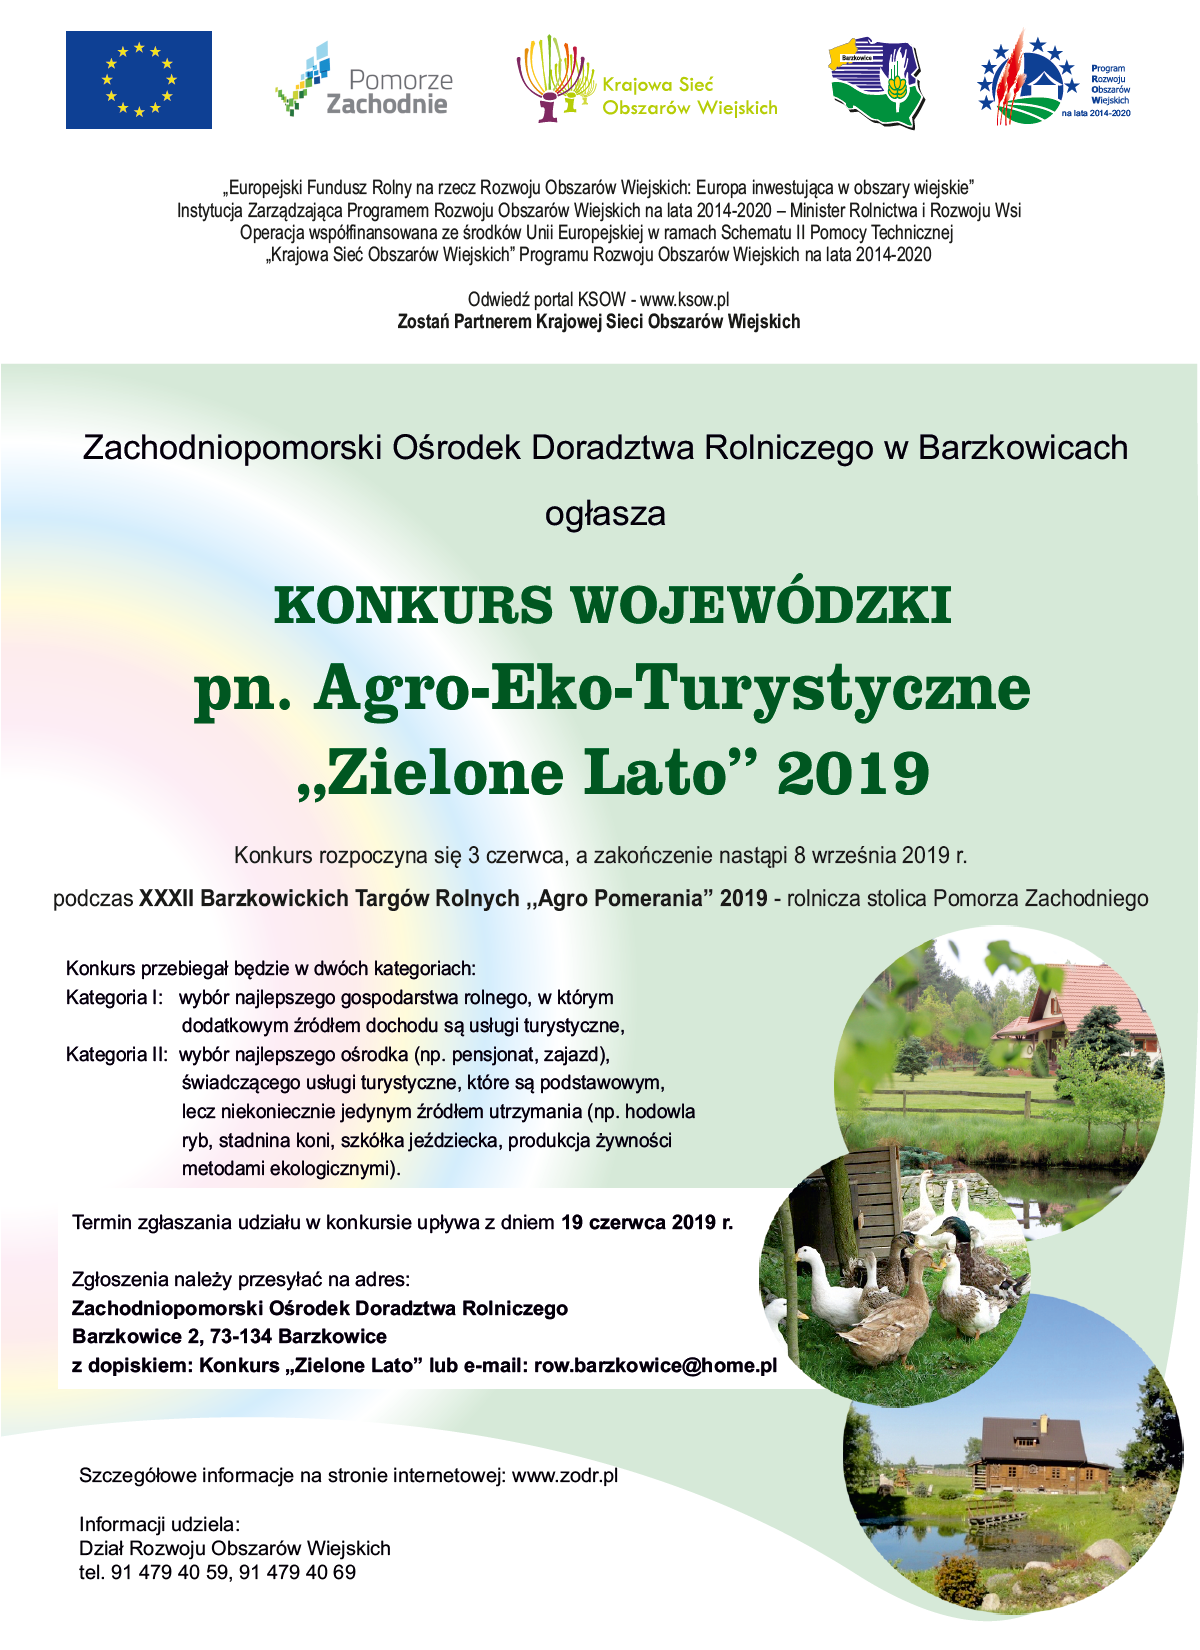 Agro-Eko-Turystycznie Zielone Lato 2019